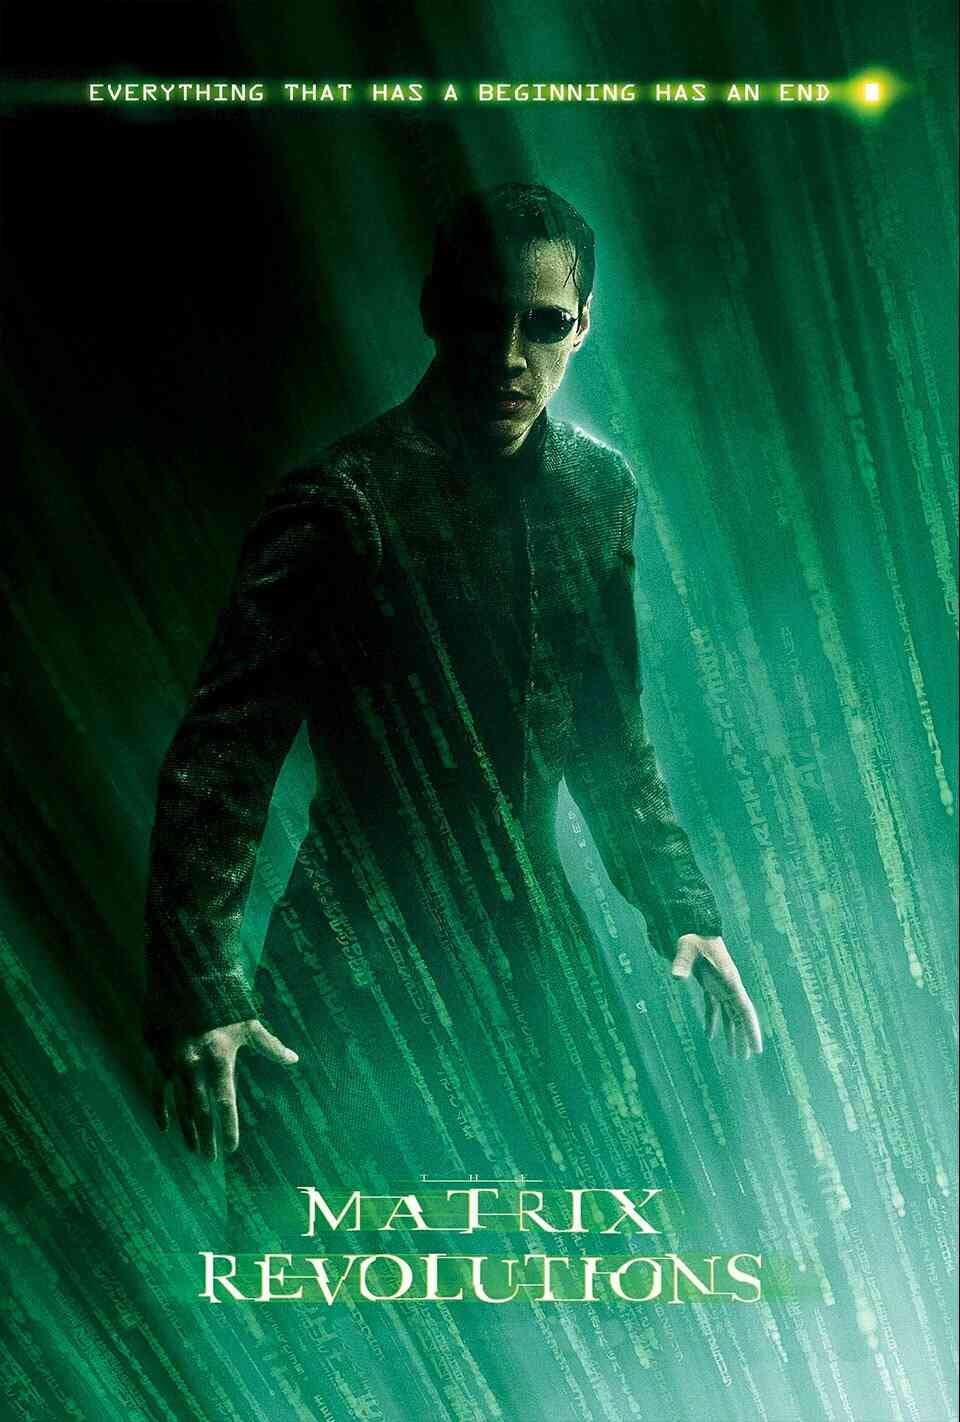 Read The Matrix Revolutions screenplay (poster)